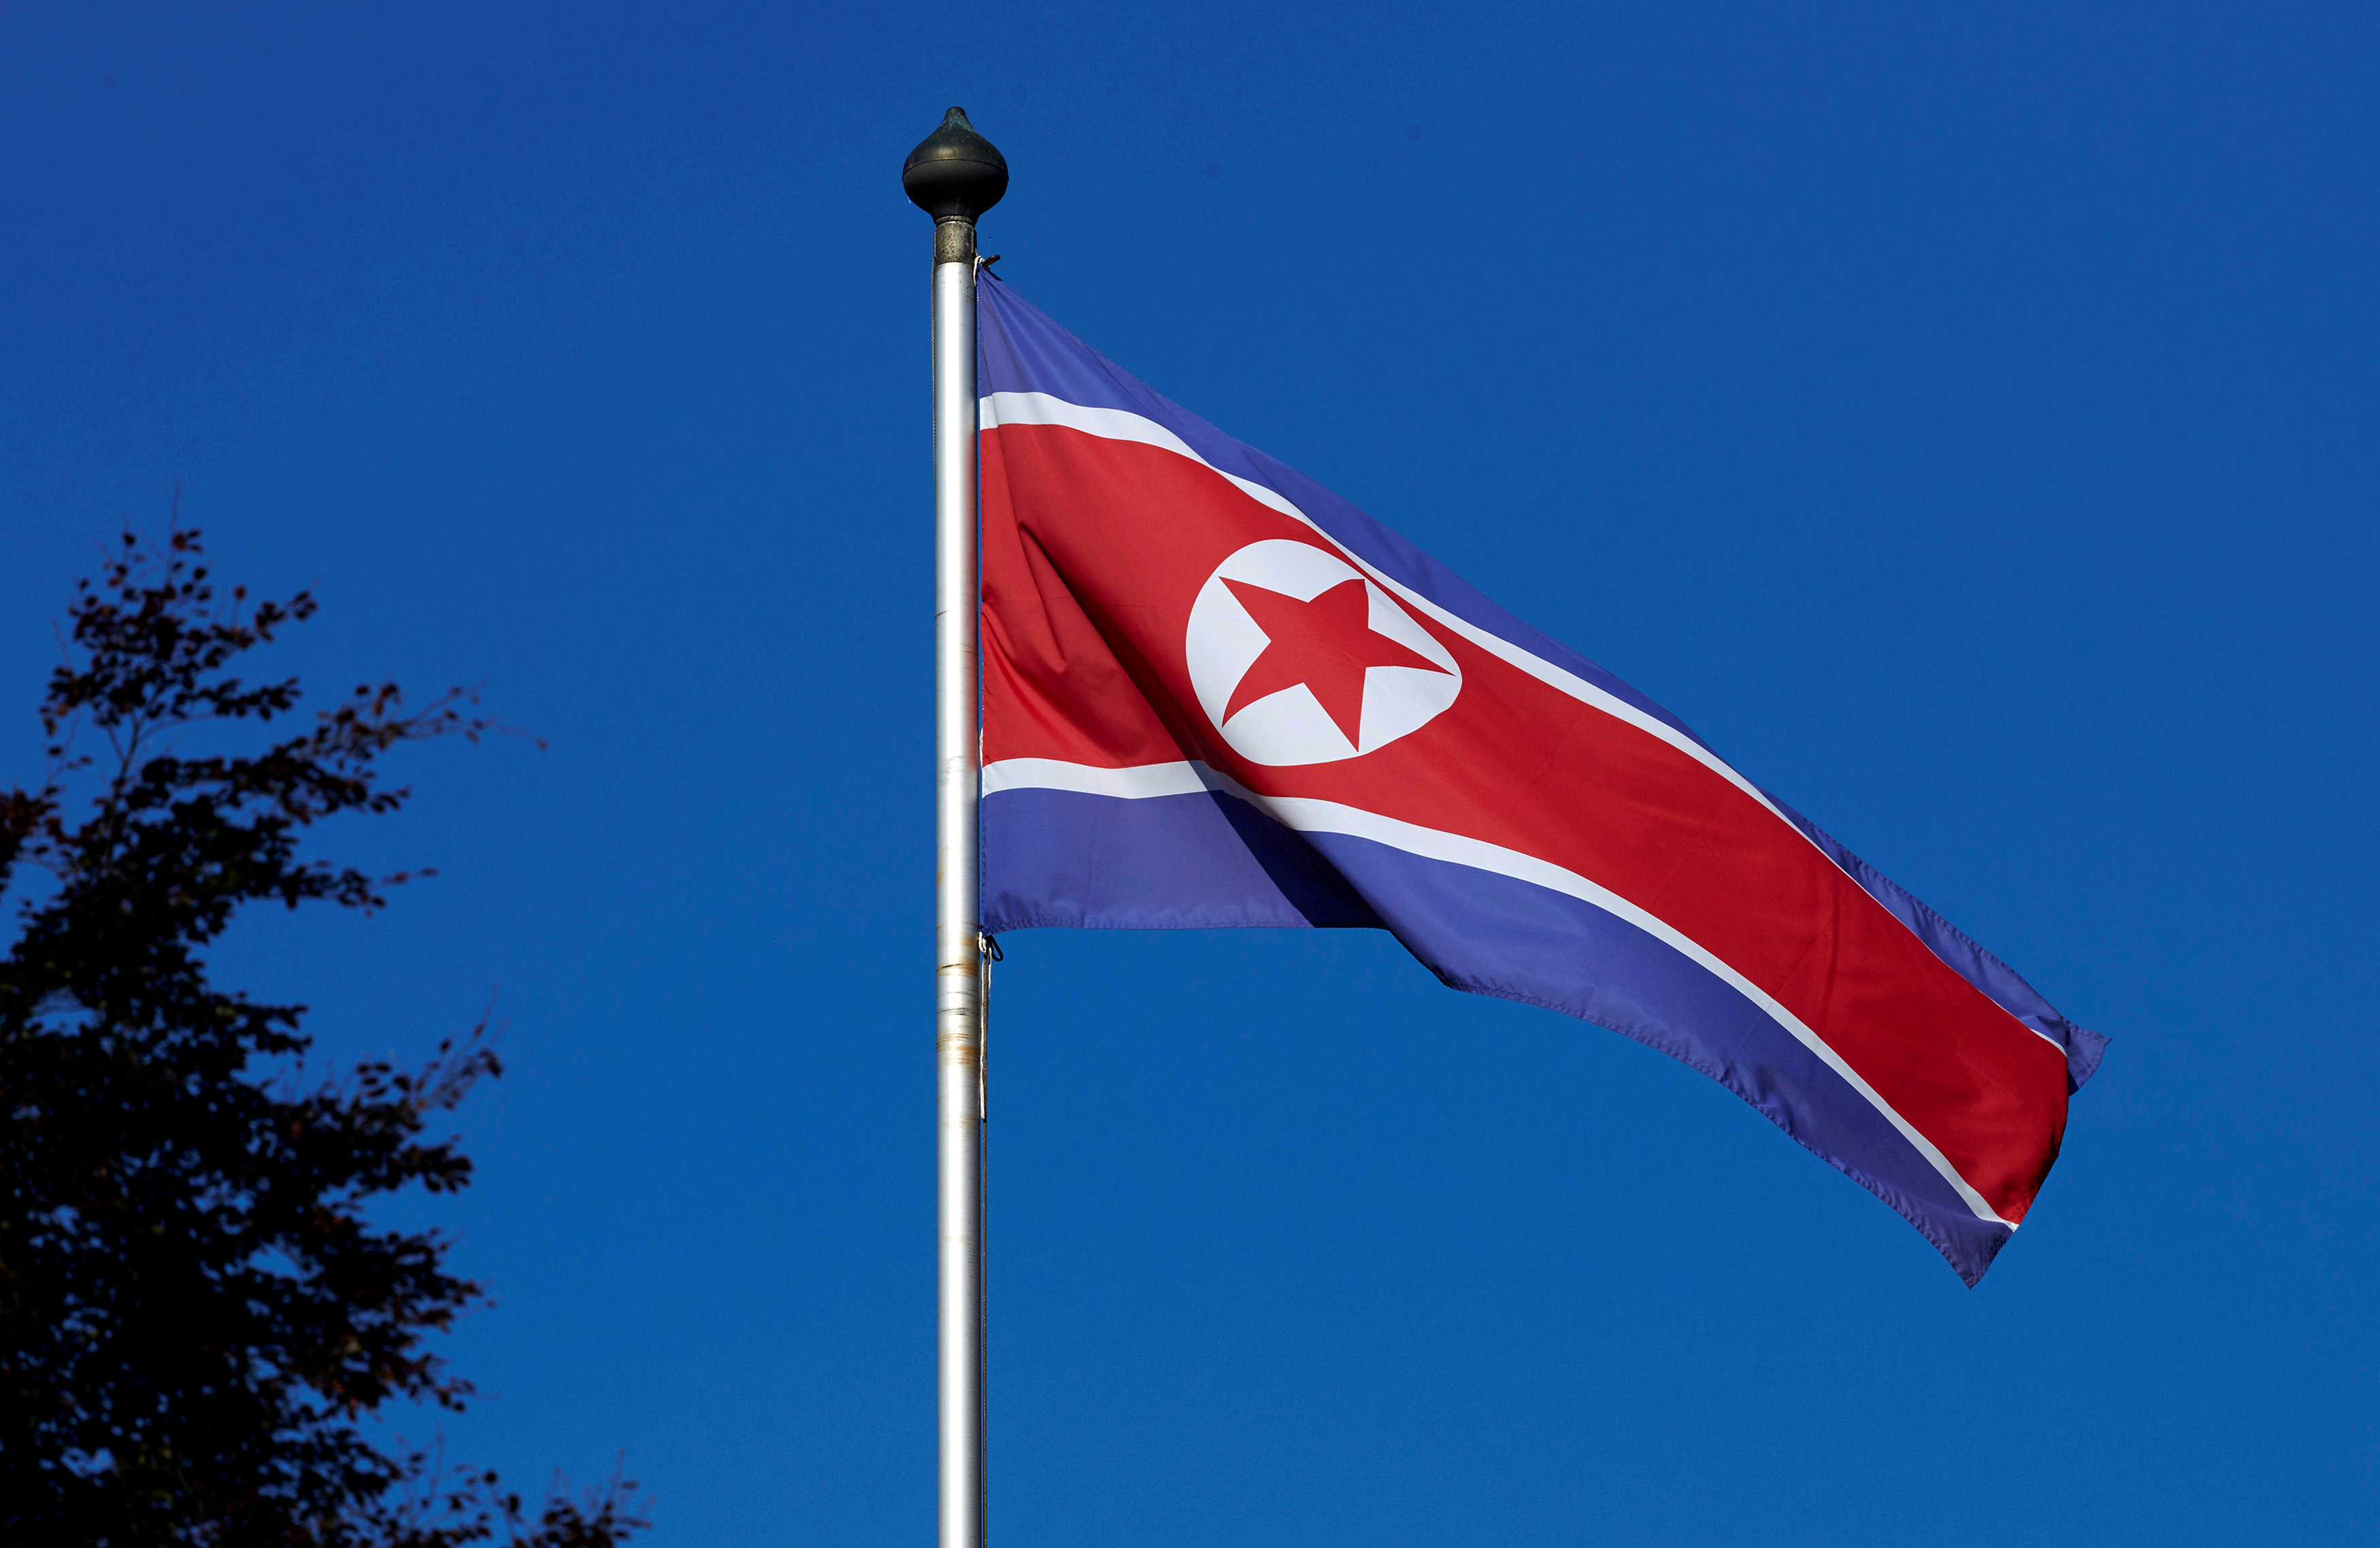 Η Βόρειος Κορέα συνεχάρη τον Μακρόν για την εκλογή του